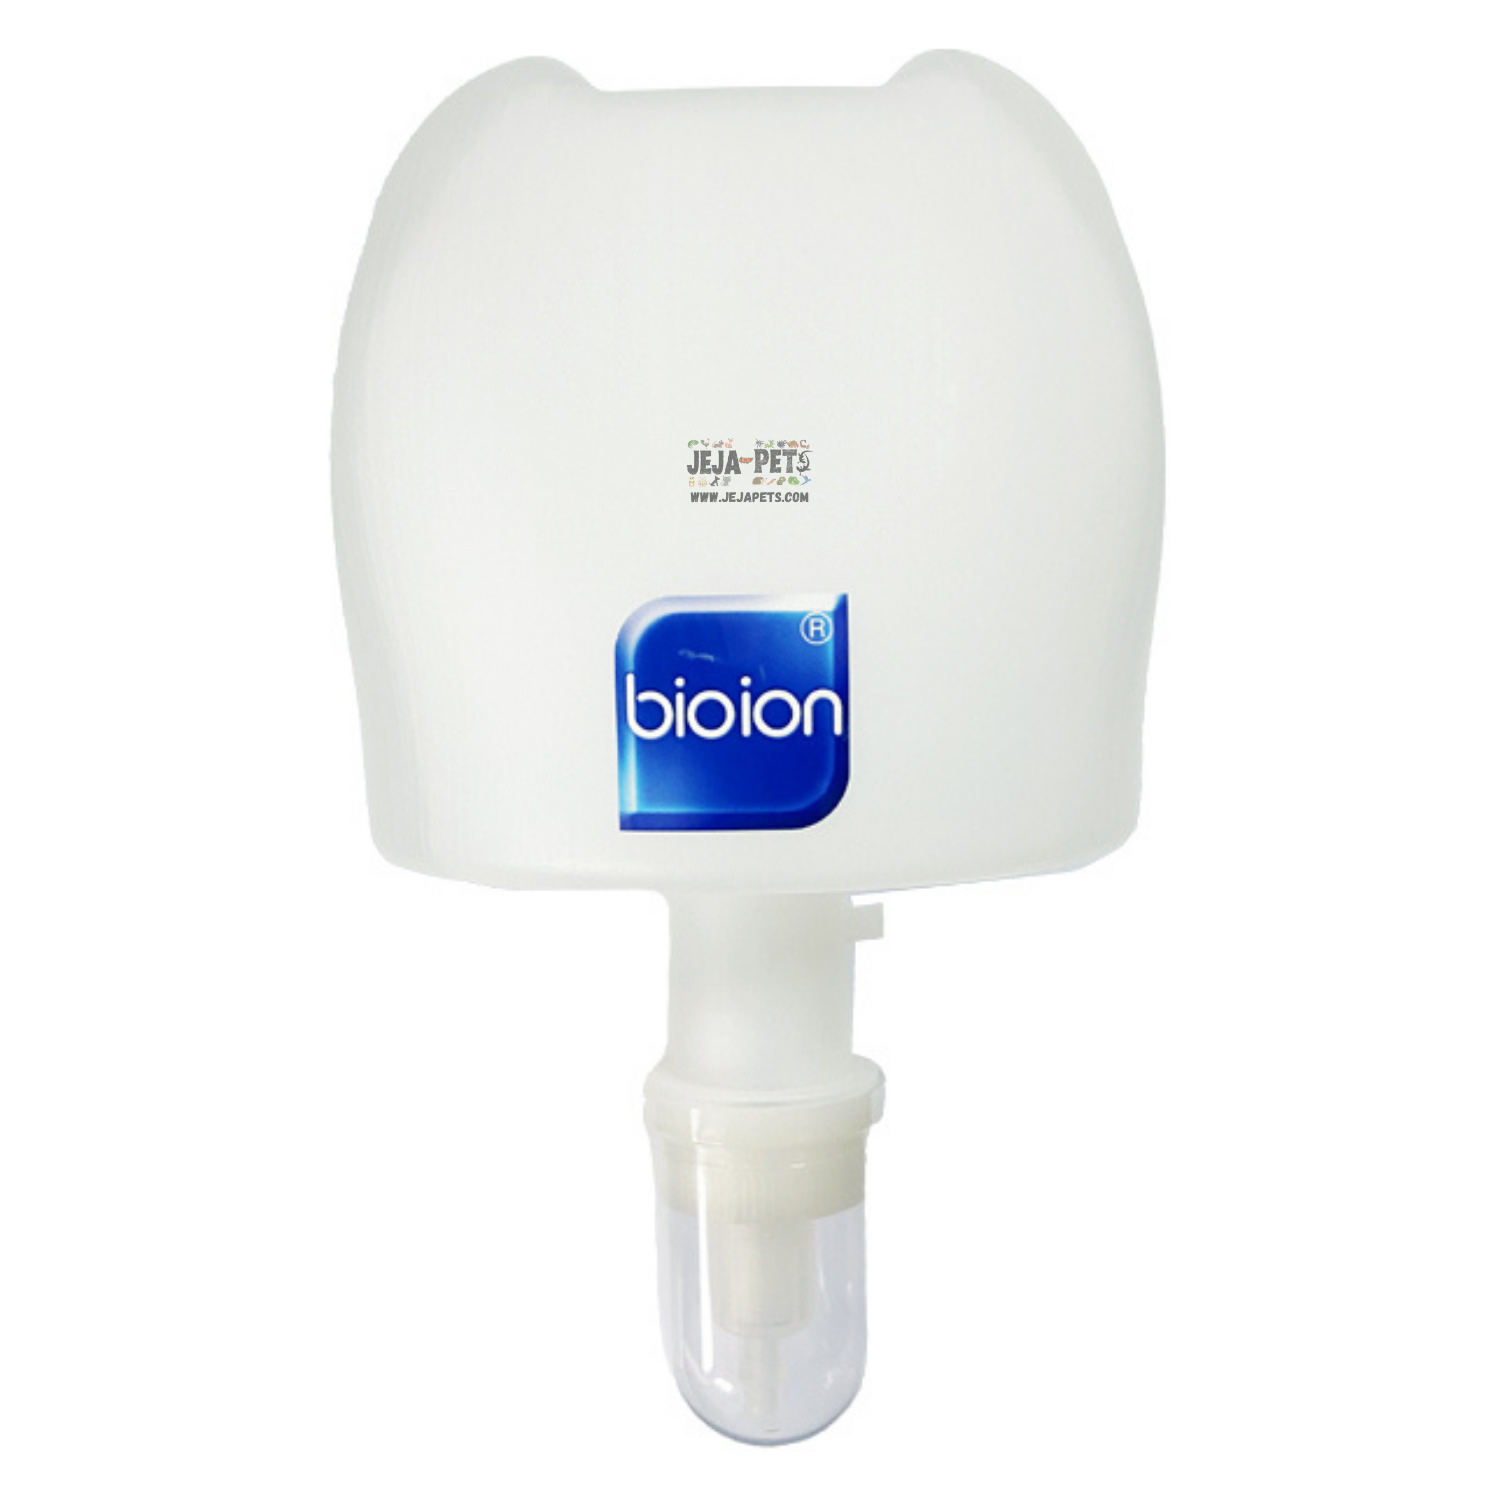 Bioion Hand Foam Sanitizer Ocean Blue Refill - 800ml